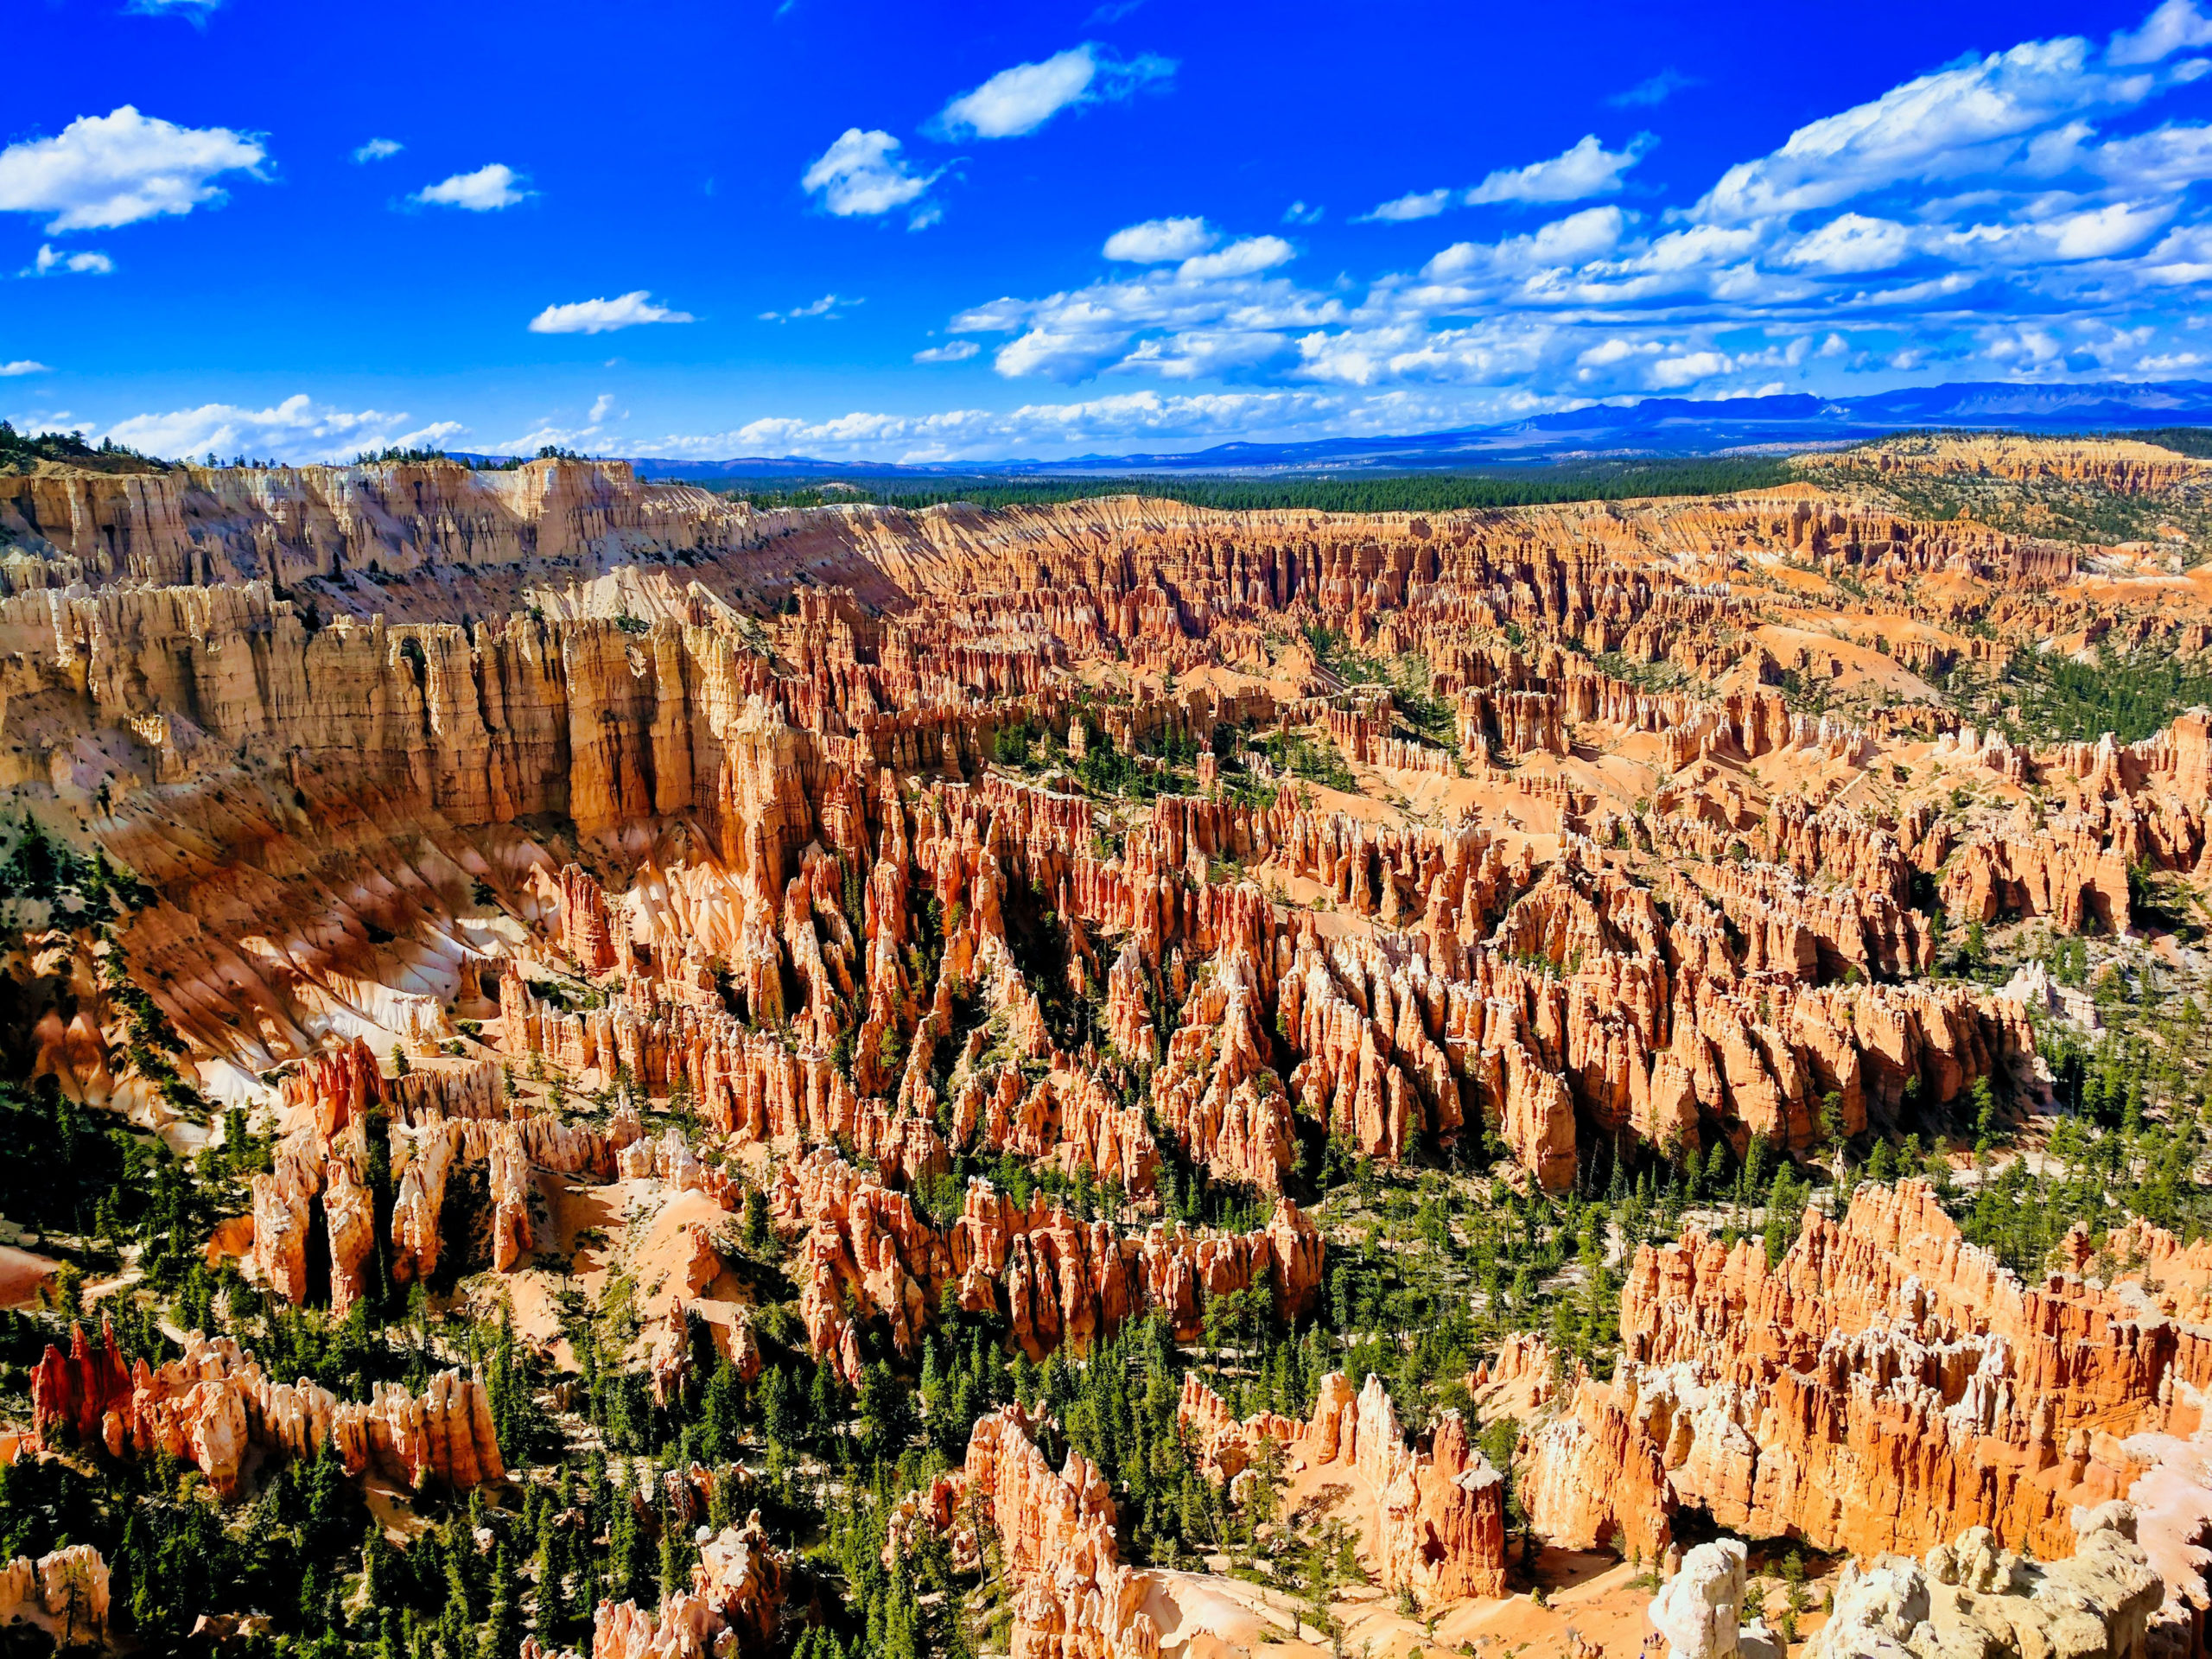 Een aantal nationale parken in de Verenigde Staten en Zweden kun je virtueel bezoeken. Zoals Bryce Canyon in de VS en Abisko National Park in Zweden.